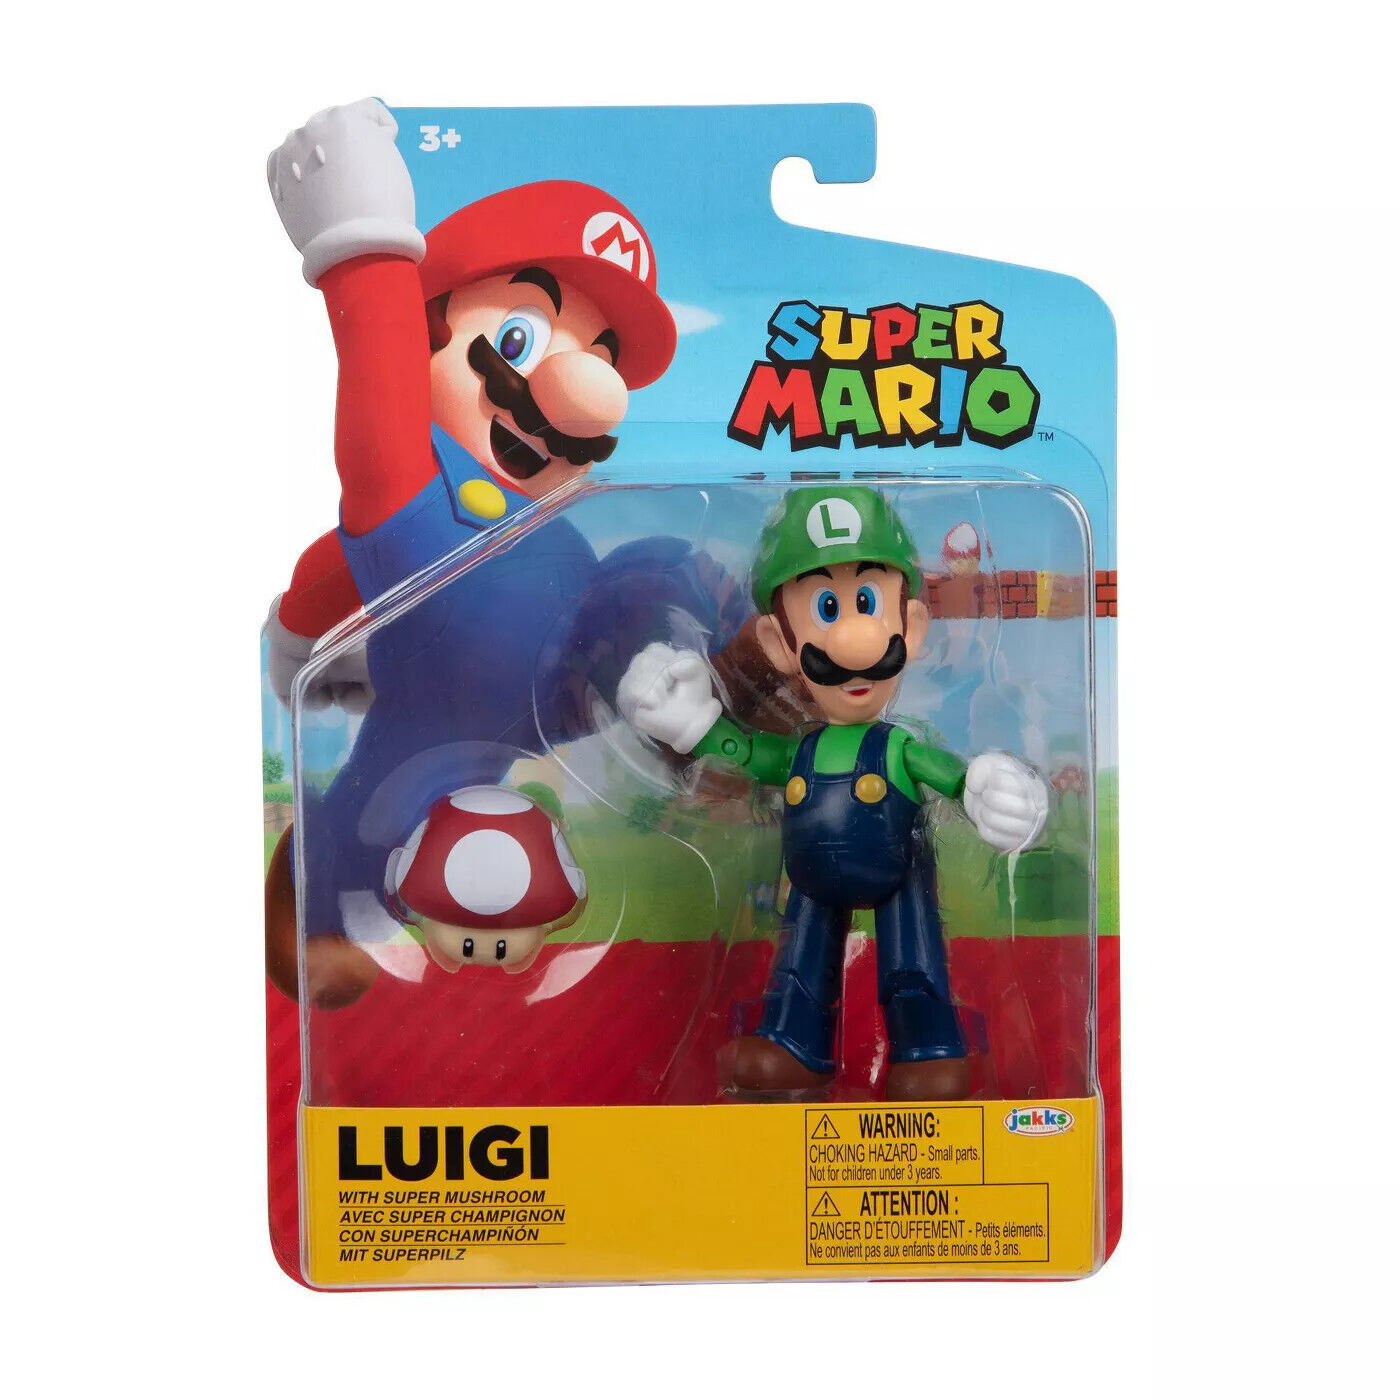 World of Mario - Super Mario Luigi with Super Mushroom